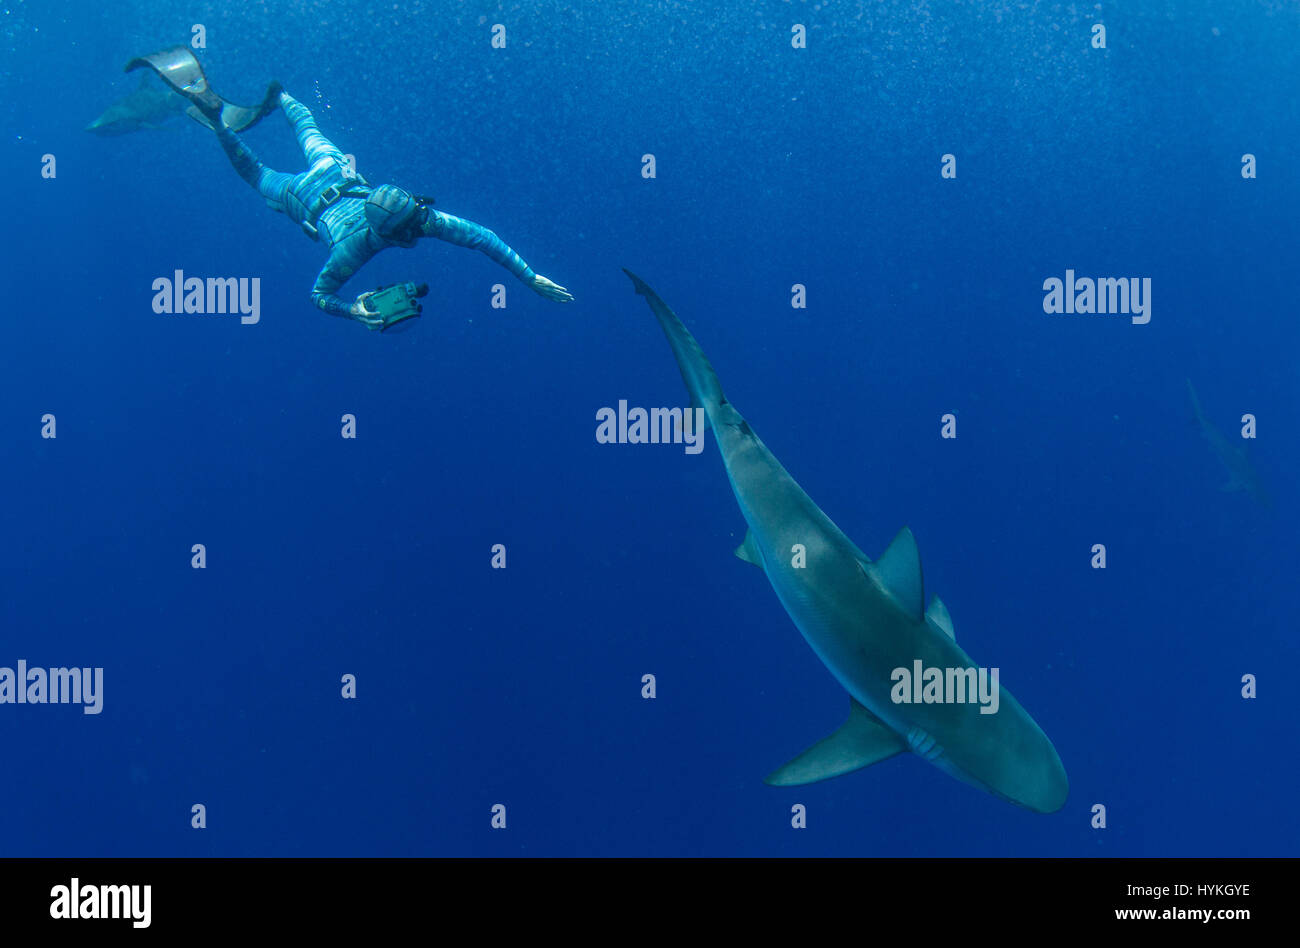 Marine Biologen Riley Elliott testen den Anzug, mit einer Sandbank und Galapago Haie. Wissenschaftler haben einen neuen Neoprenanzug enthüllt fungiert als ein INVISIBILTY Mantel zu Fischen ermöglicht es Menschen, mit einigen der am meisten gefürchteten Seabeasts der Natur zu interagieren. Bilder zeigen einen Taucher, den HECS Stealth-Neoprenanzug tragen neben potenziell tödliche Tigerhaie, giftigen Stachelrochen und normalerweise müde Fischschwärme schwimmen. Andere Bilder zeigen Wissenschaftler und Nervenkitzel wie Forschung-hungrige Touristen zu studieren und mit riesigen Schildkröten und Krebse interagieren können. Vice President of Product Development bei Stockfoto